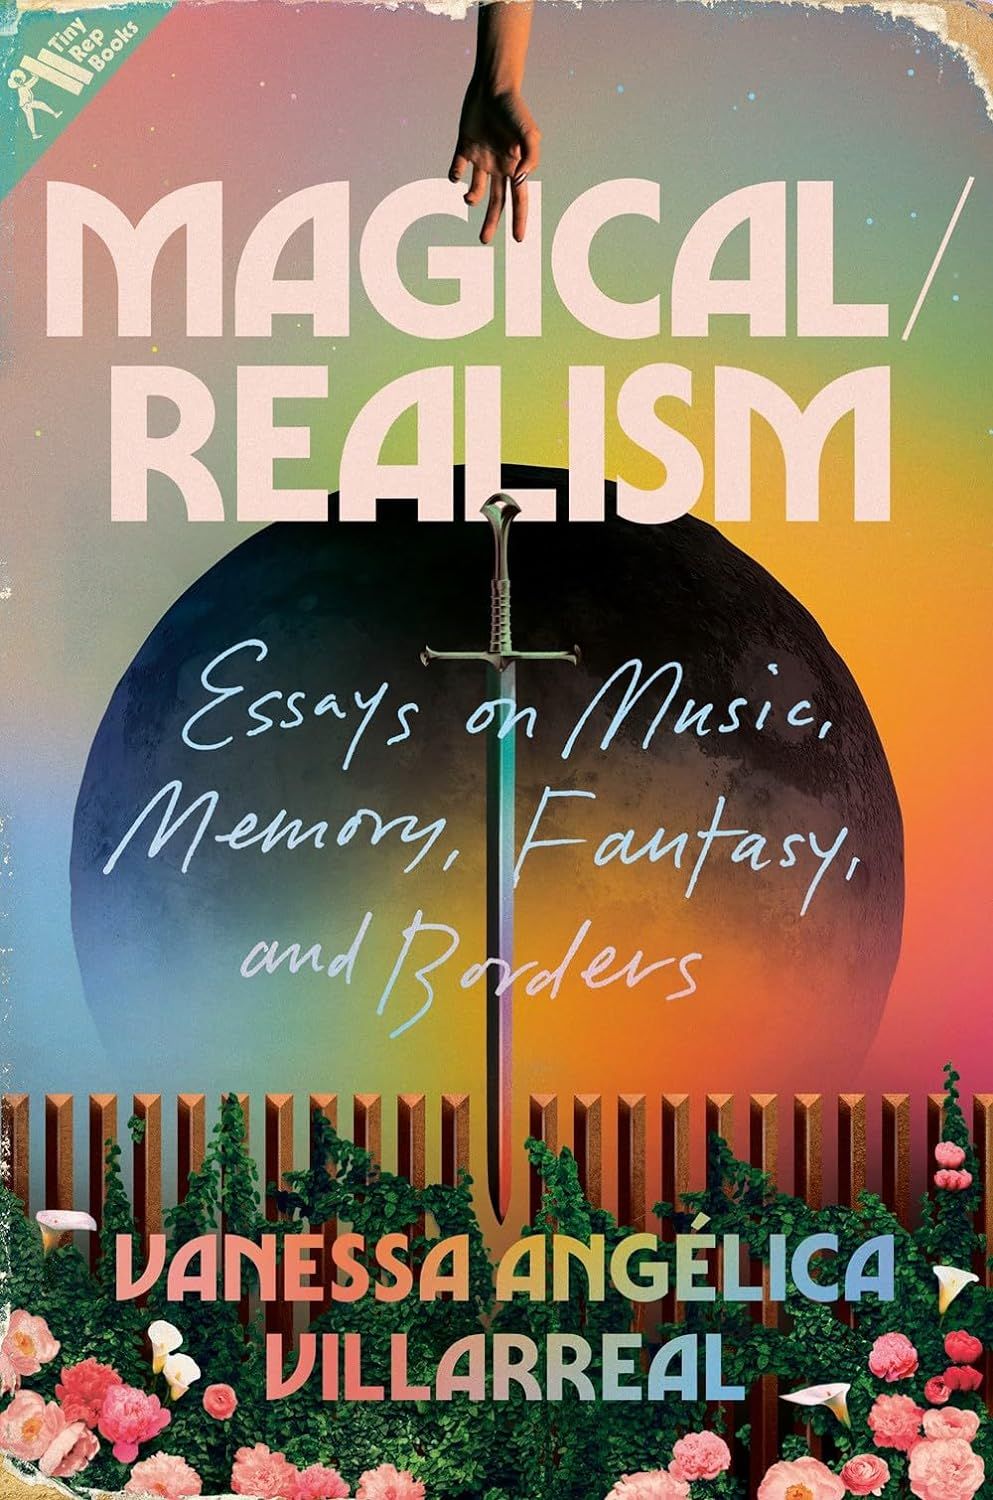 un graphique de la couverture de Magical/Realism: Essays on Music, Memory, Fantasy, and Borders de Vanessa Angélica Villarreal 